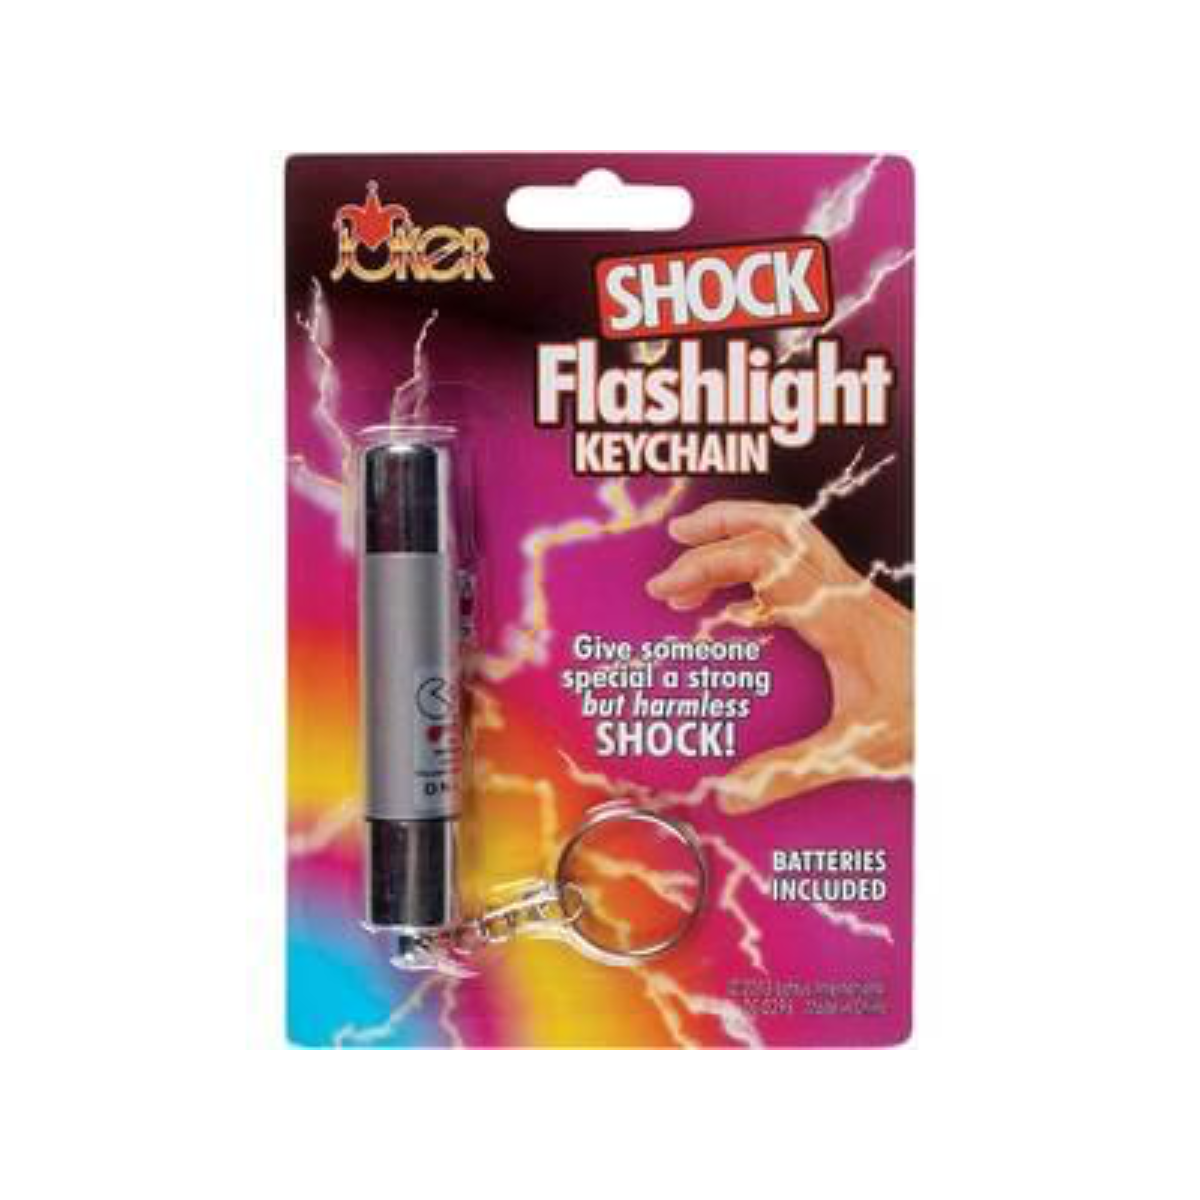 Shock Flashlight